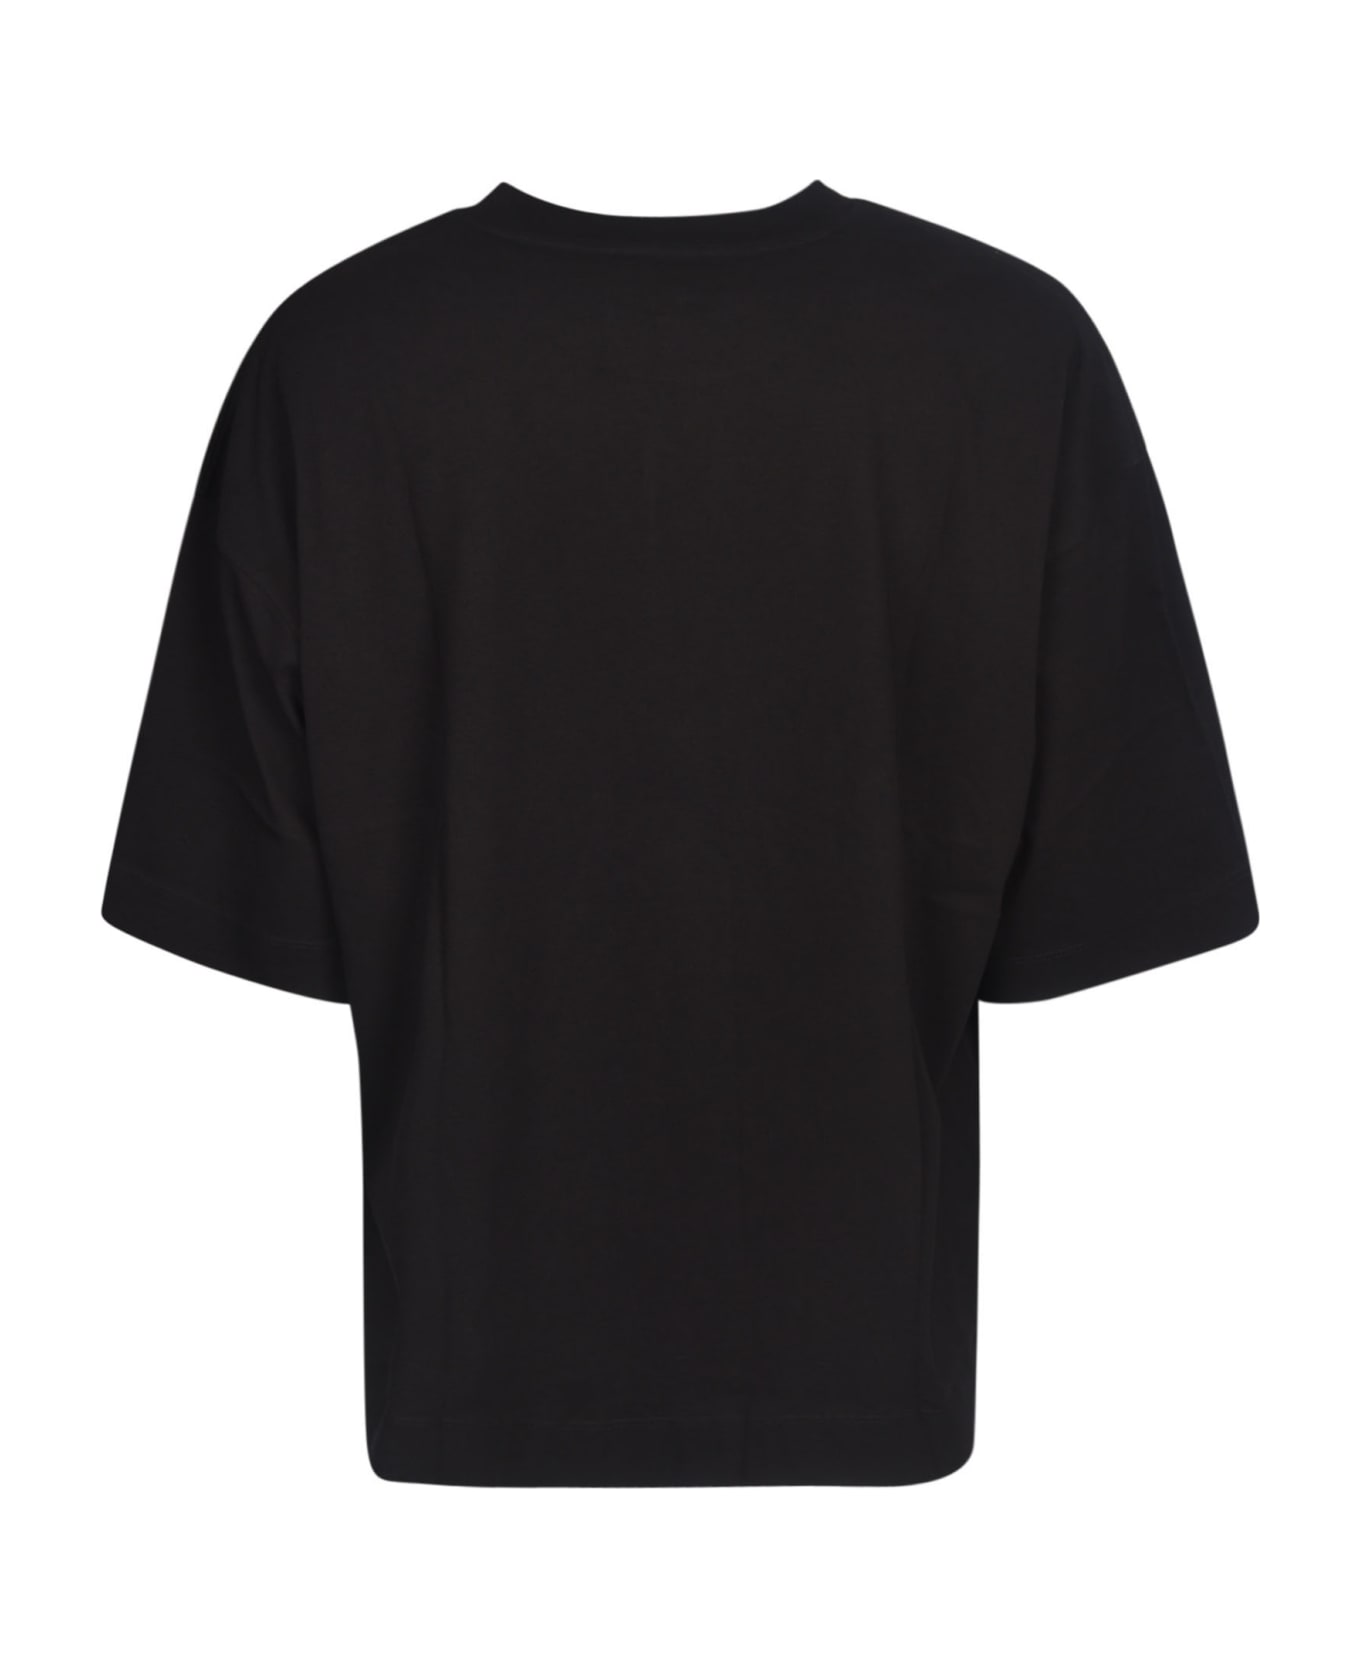 Dries Van Noten M.k.t. T-shirt - Black シャツ